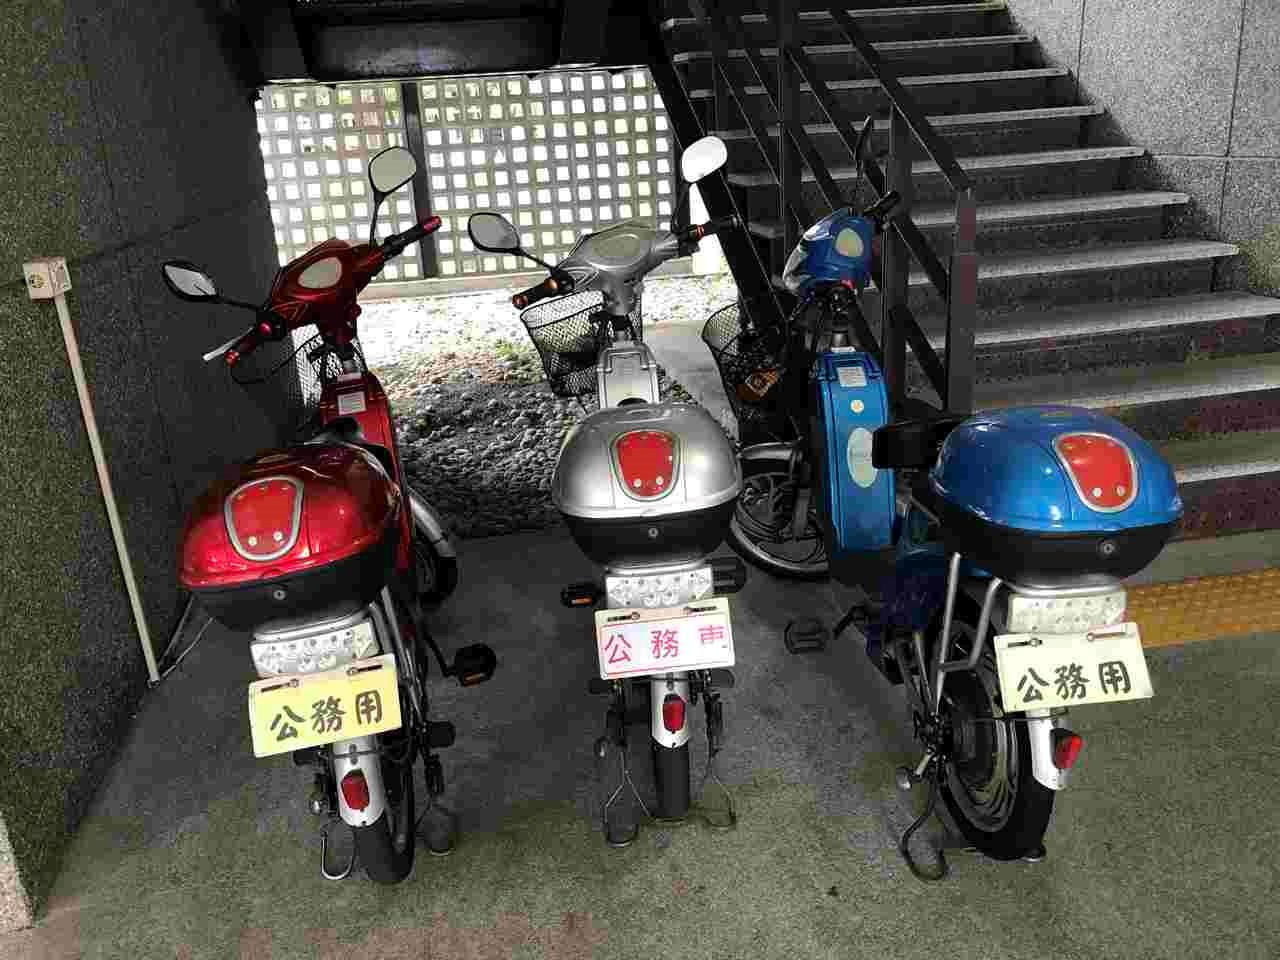 Zero emission vehicle - electrical bike. (Taitung University)